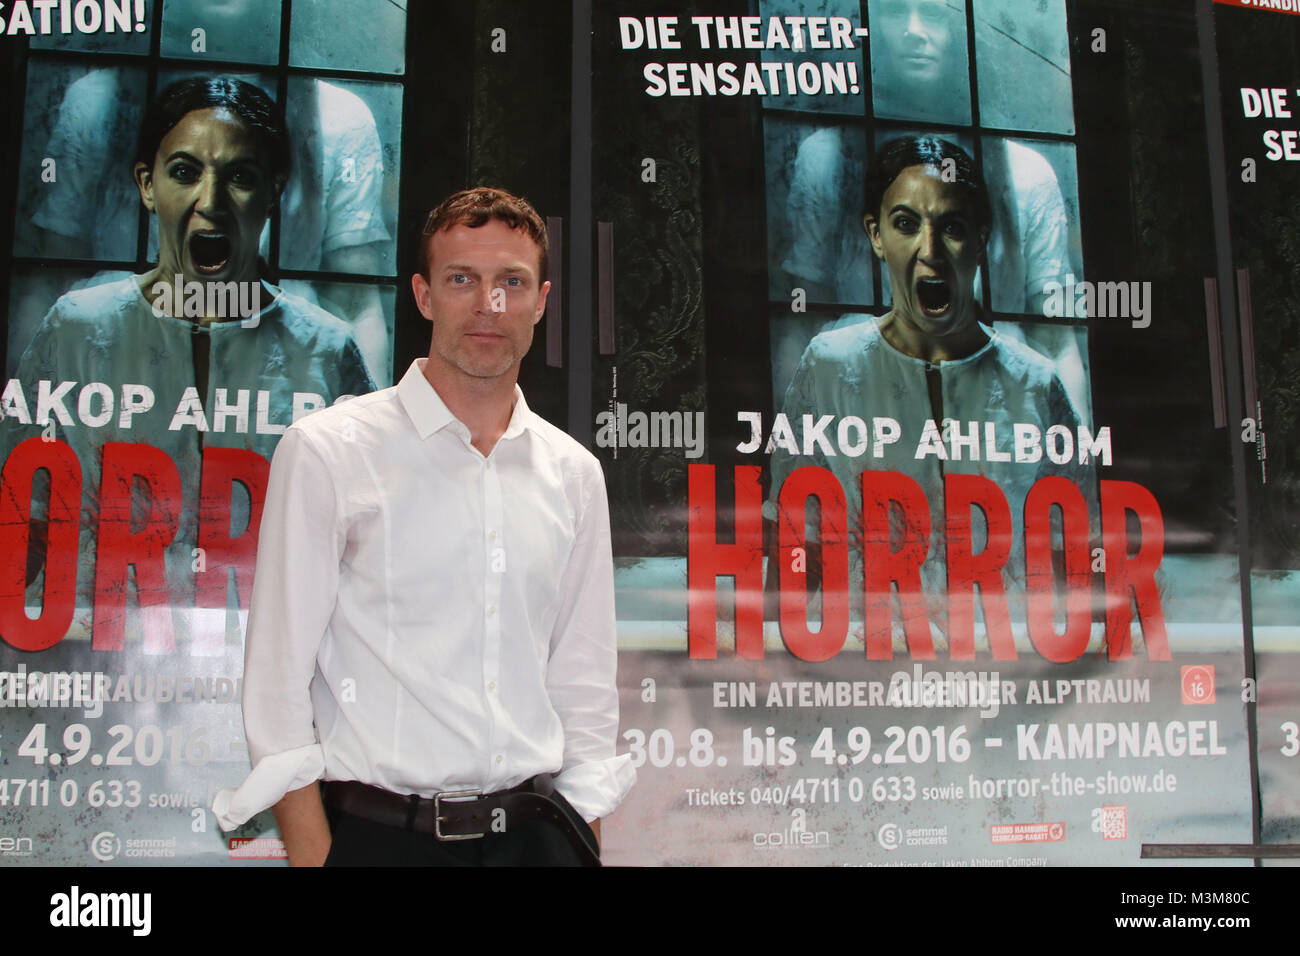 Jakop Ahlbom, der schwedische, in den Niederlanden lebende und arbeitende Regisseur, Pantomime und Choreograph., Fotoprobe 'Horror', Kampnagel Hamburg, 30.08.2016 Stock Photo